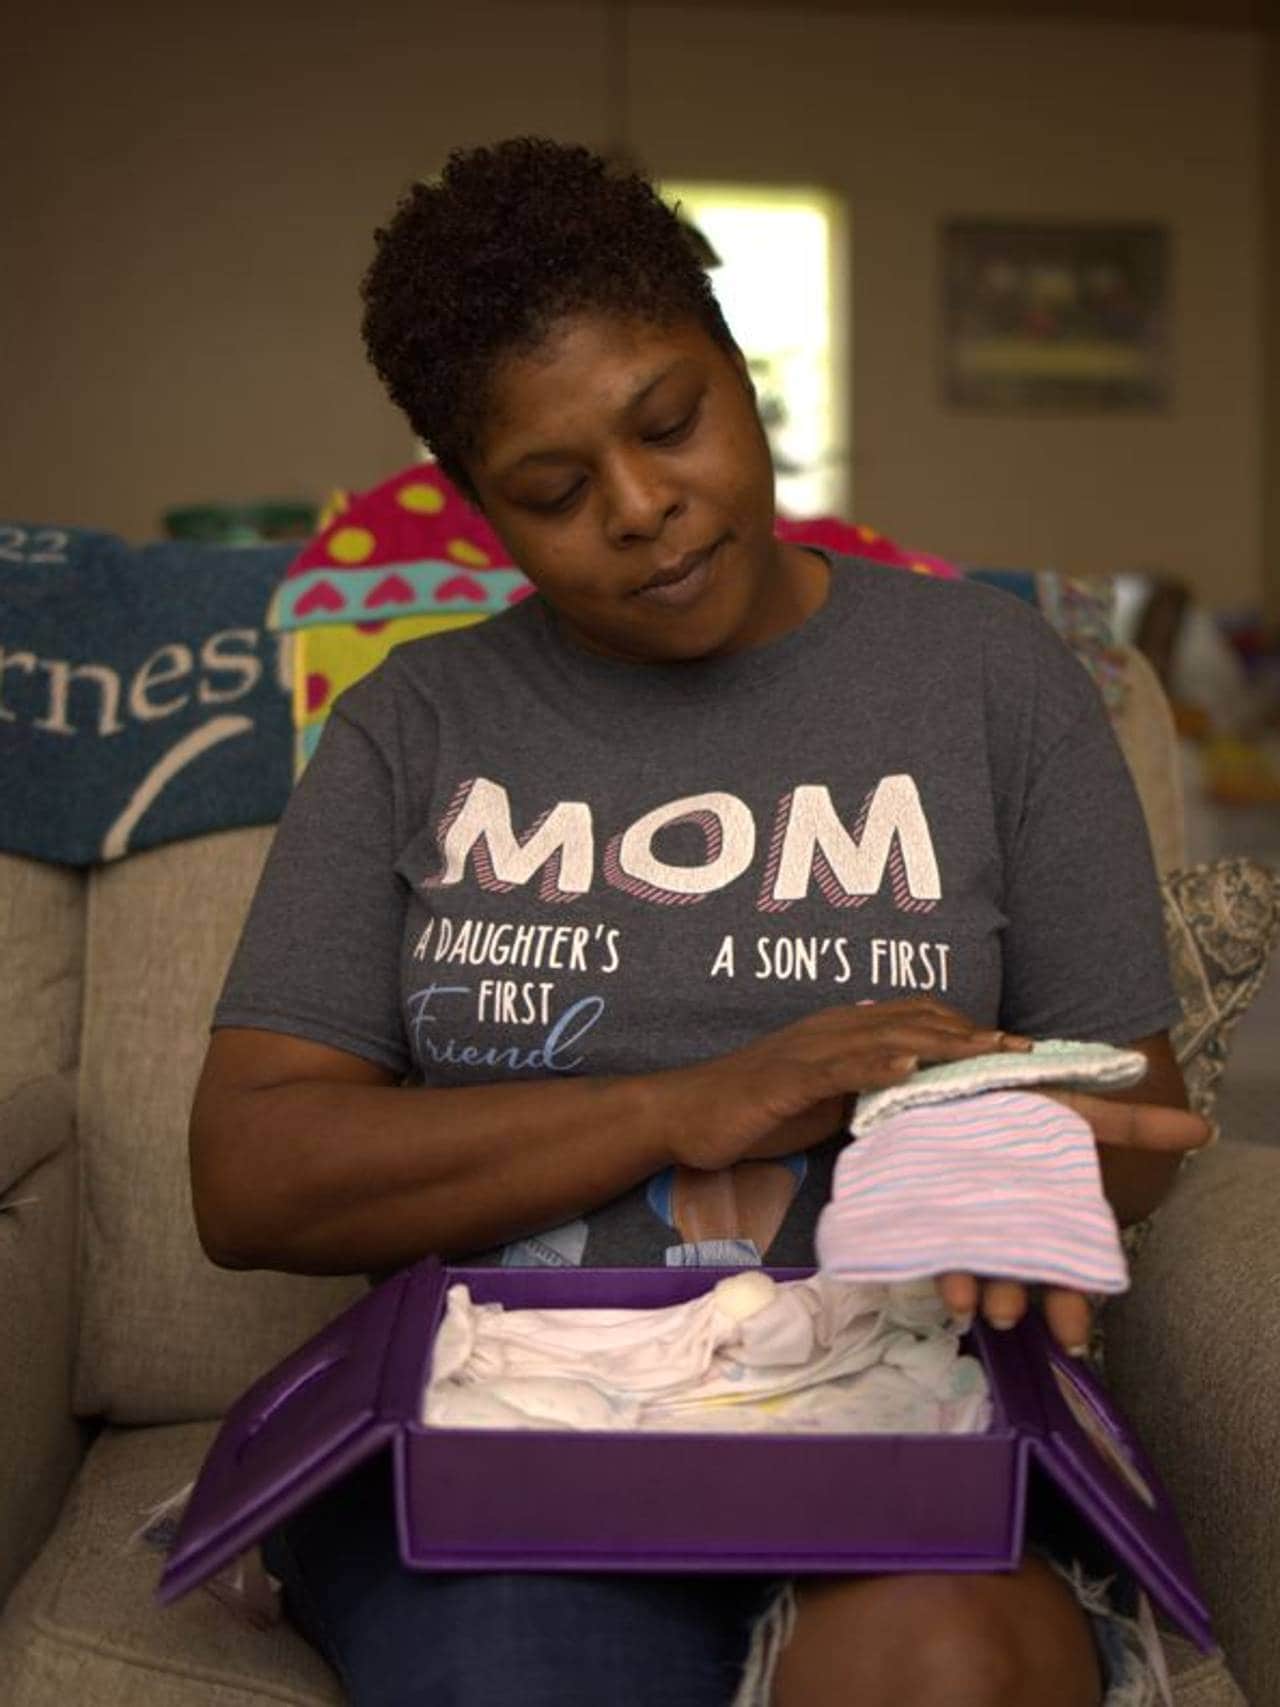 Lakiesha Brown mistet både sønnen i magen nesten litt eget liv da hun var gravid.
I Louisiana frykter leger at flere kvinner og babyer vil dø dersom abort blir forbudt om få dager
